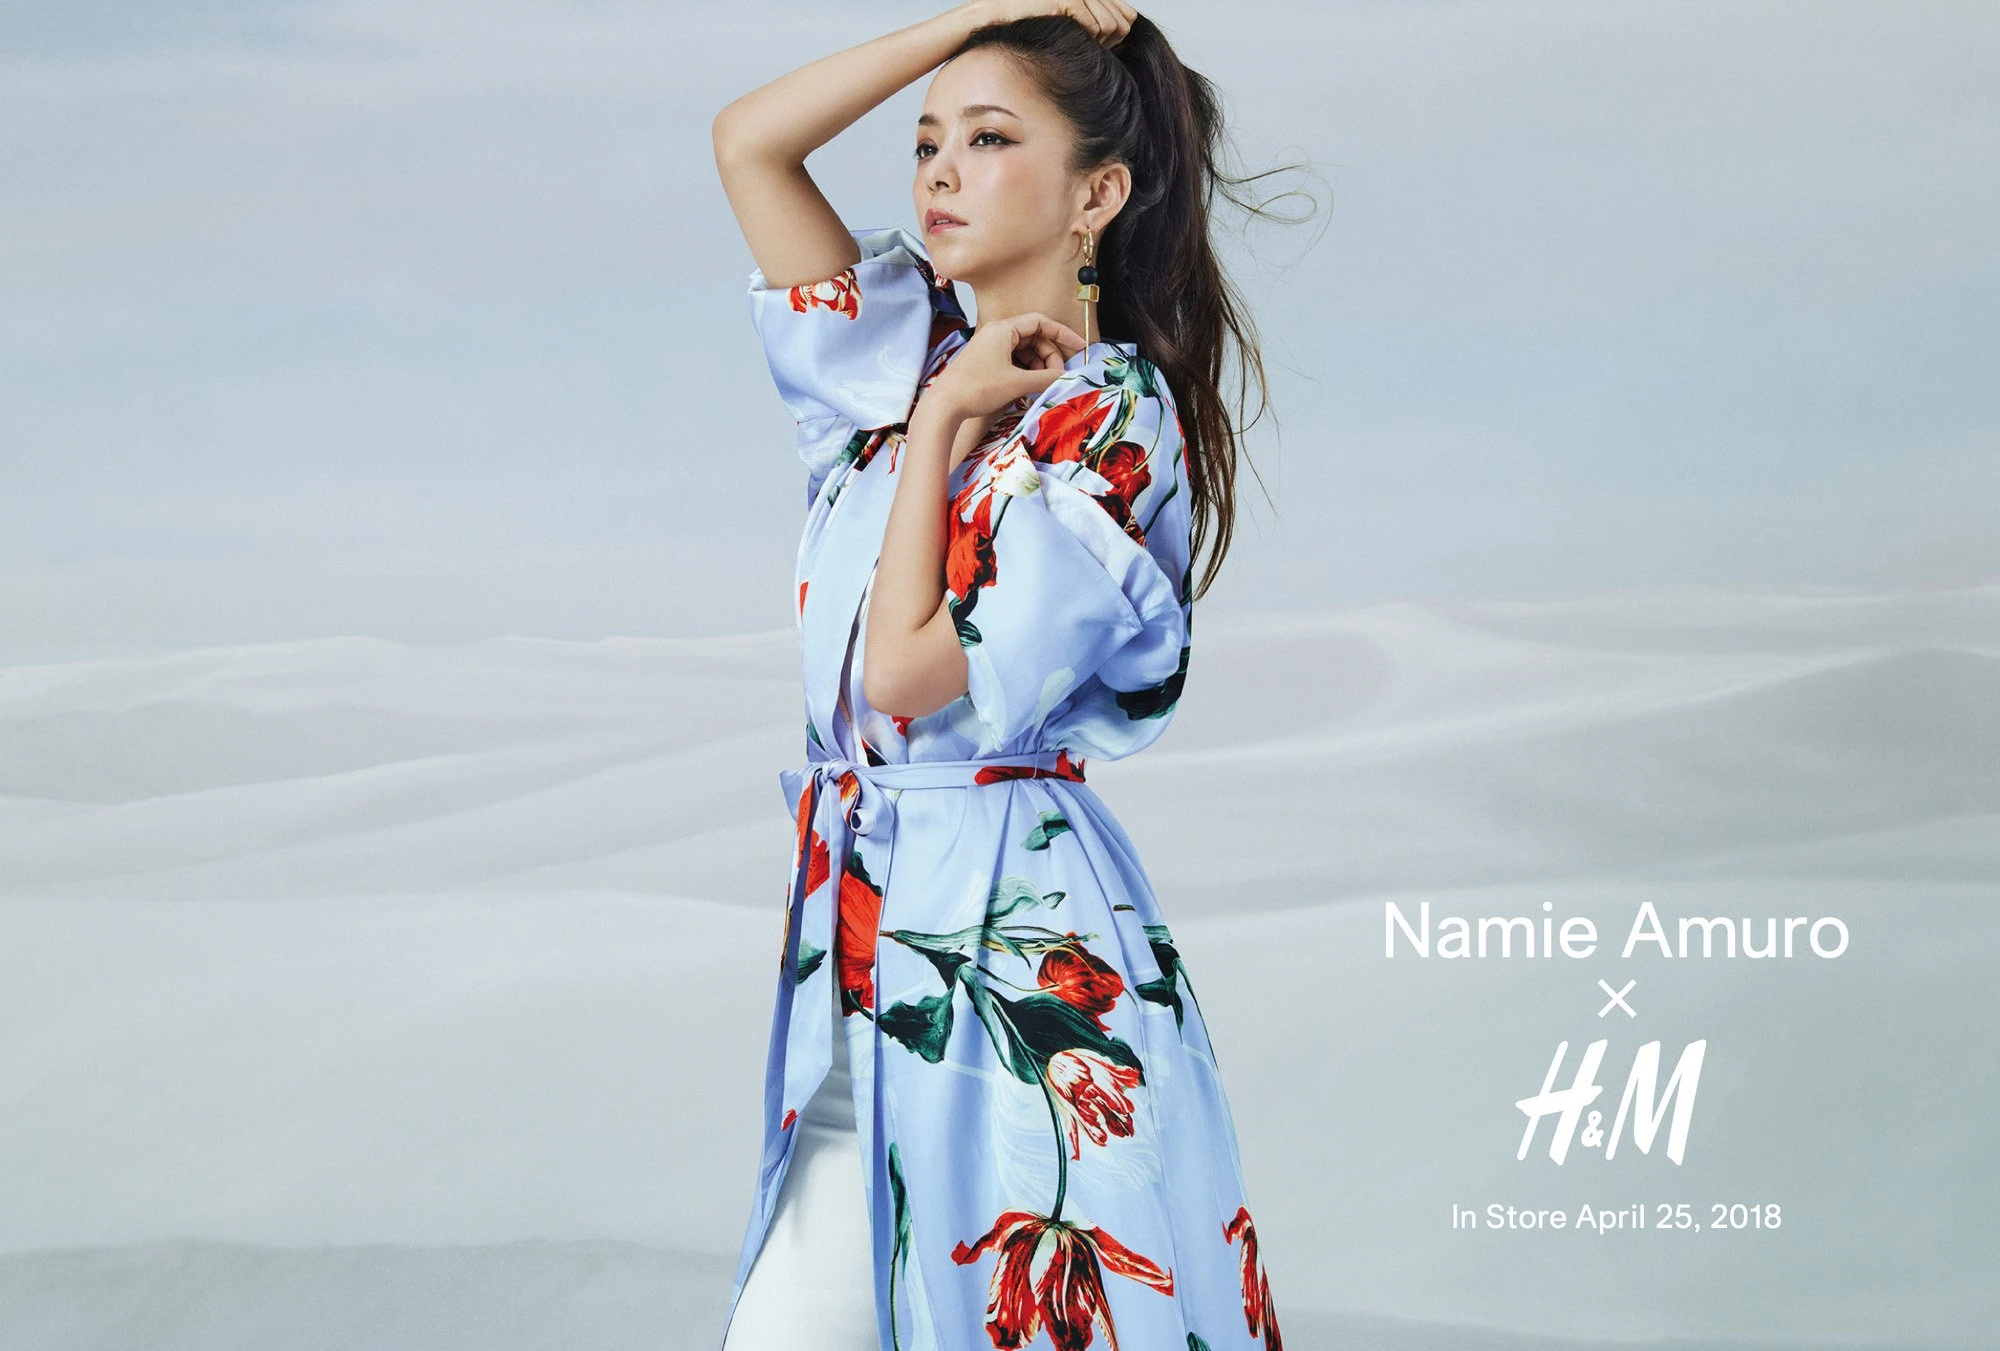 「Namie Amuro x H&M」